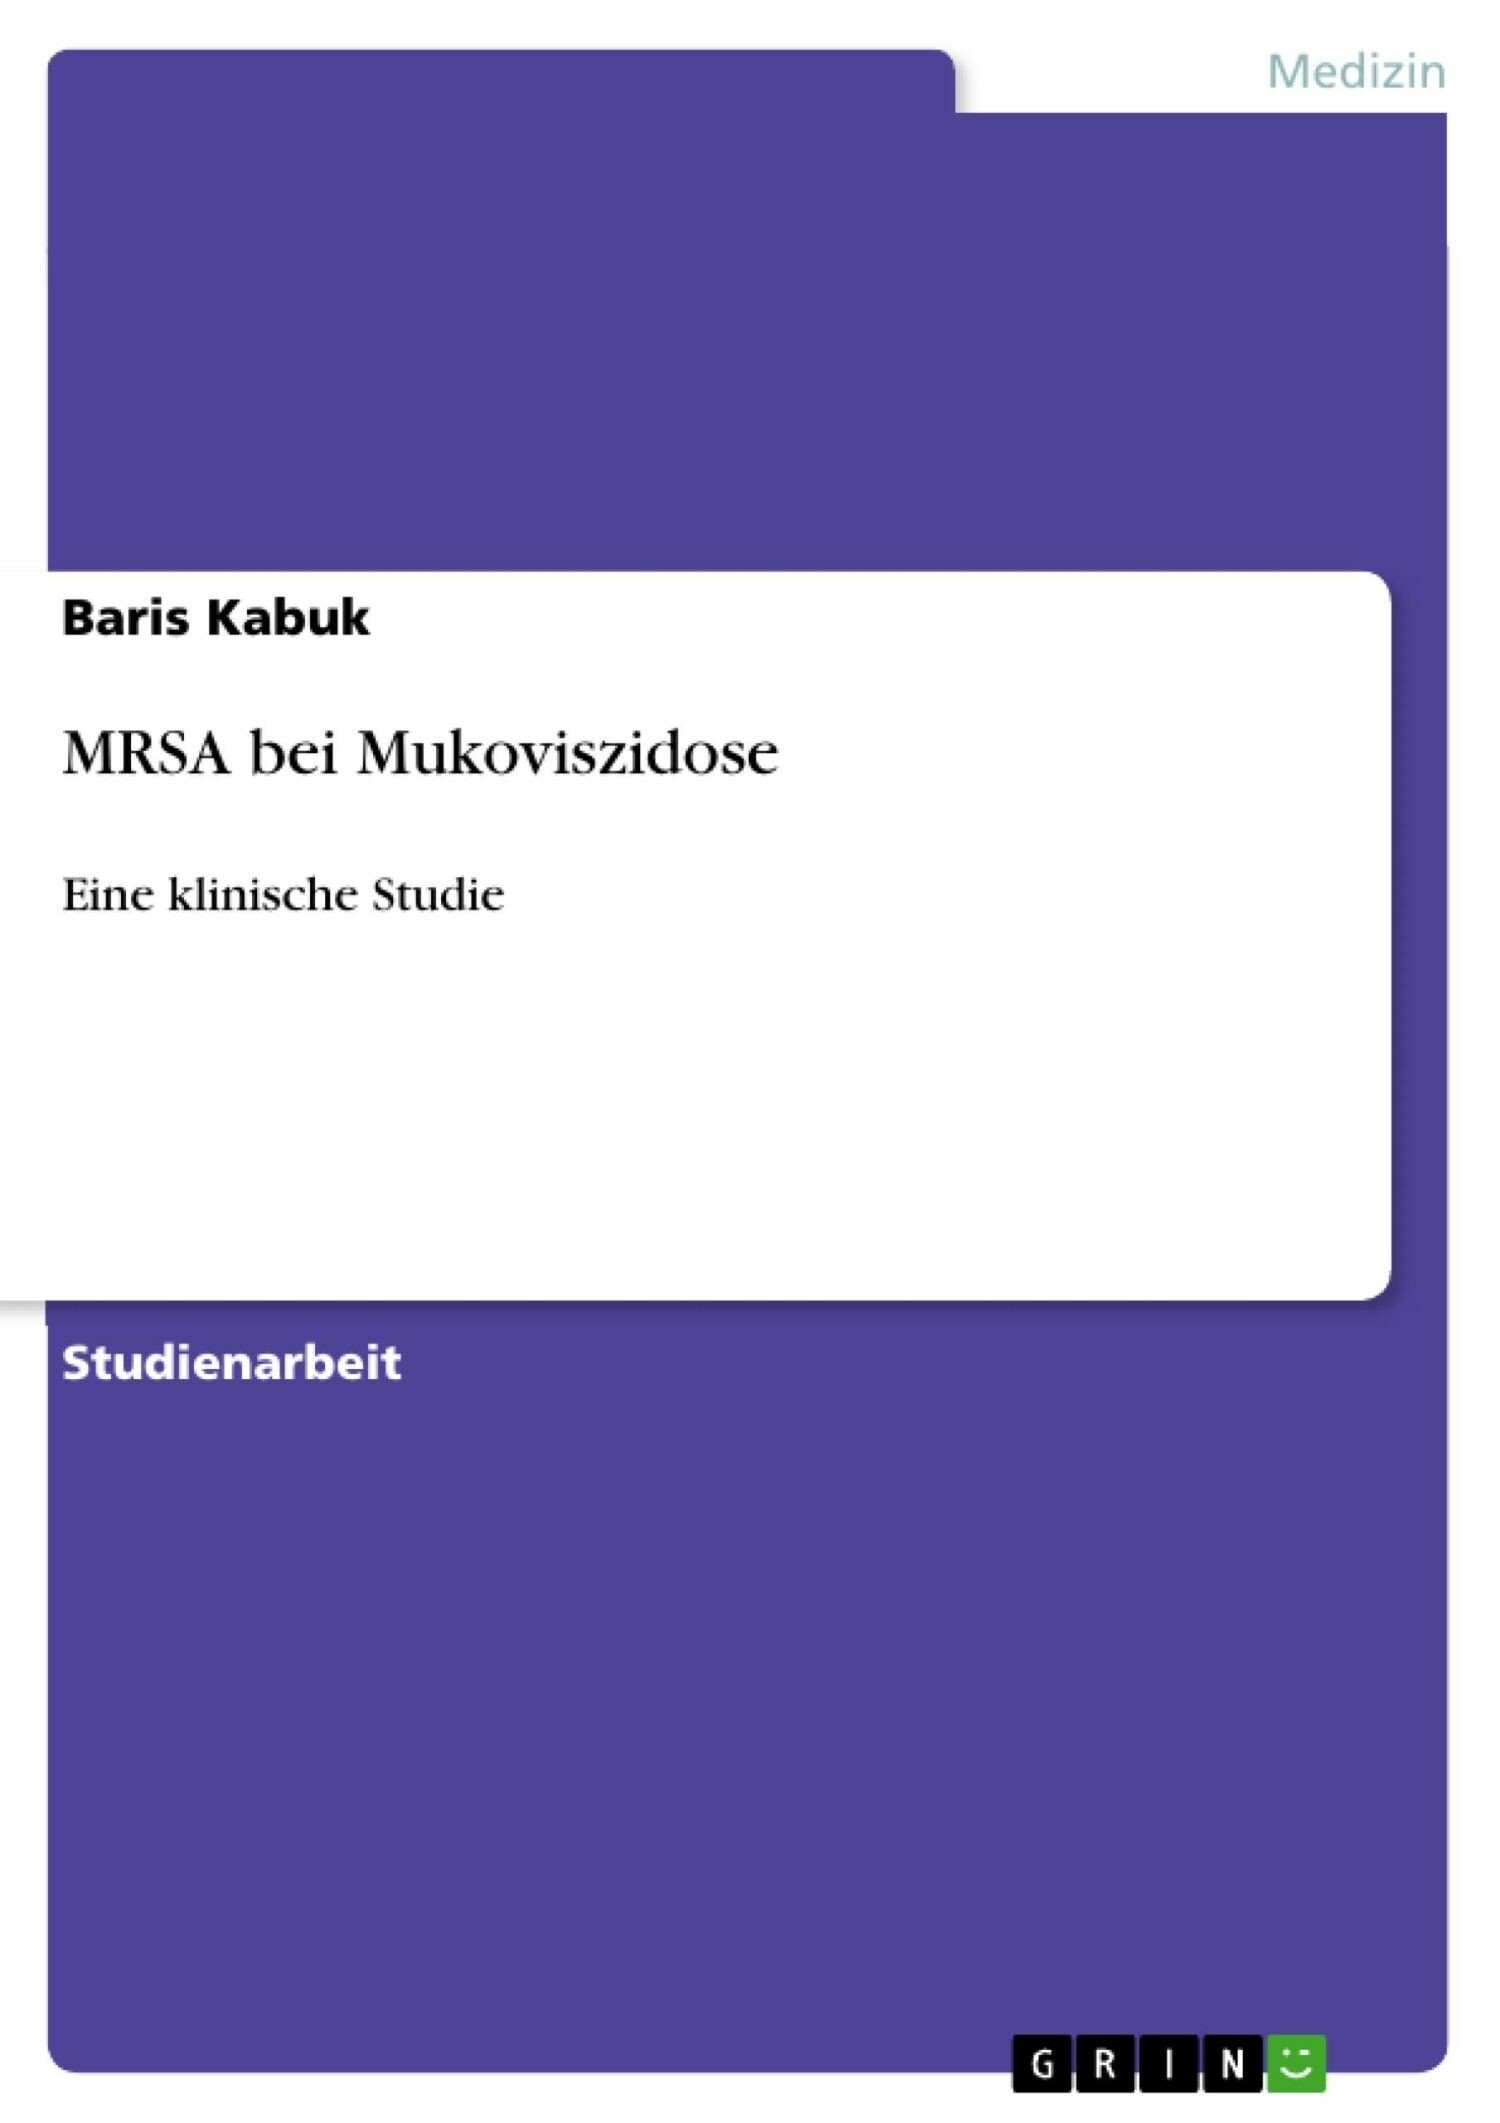 MRSA bei Mukoviszidose